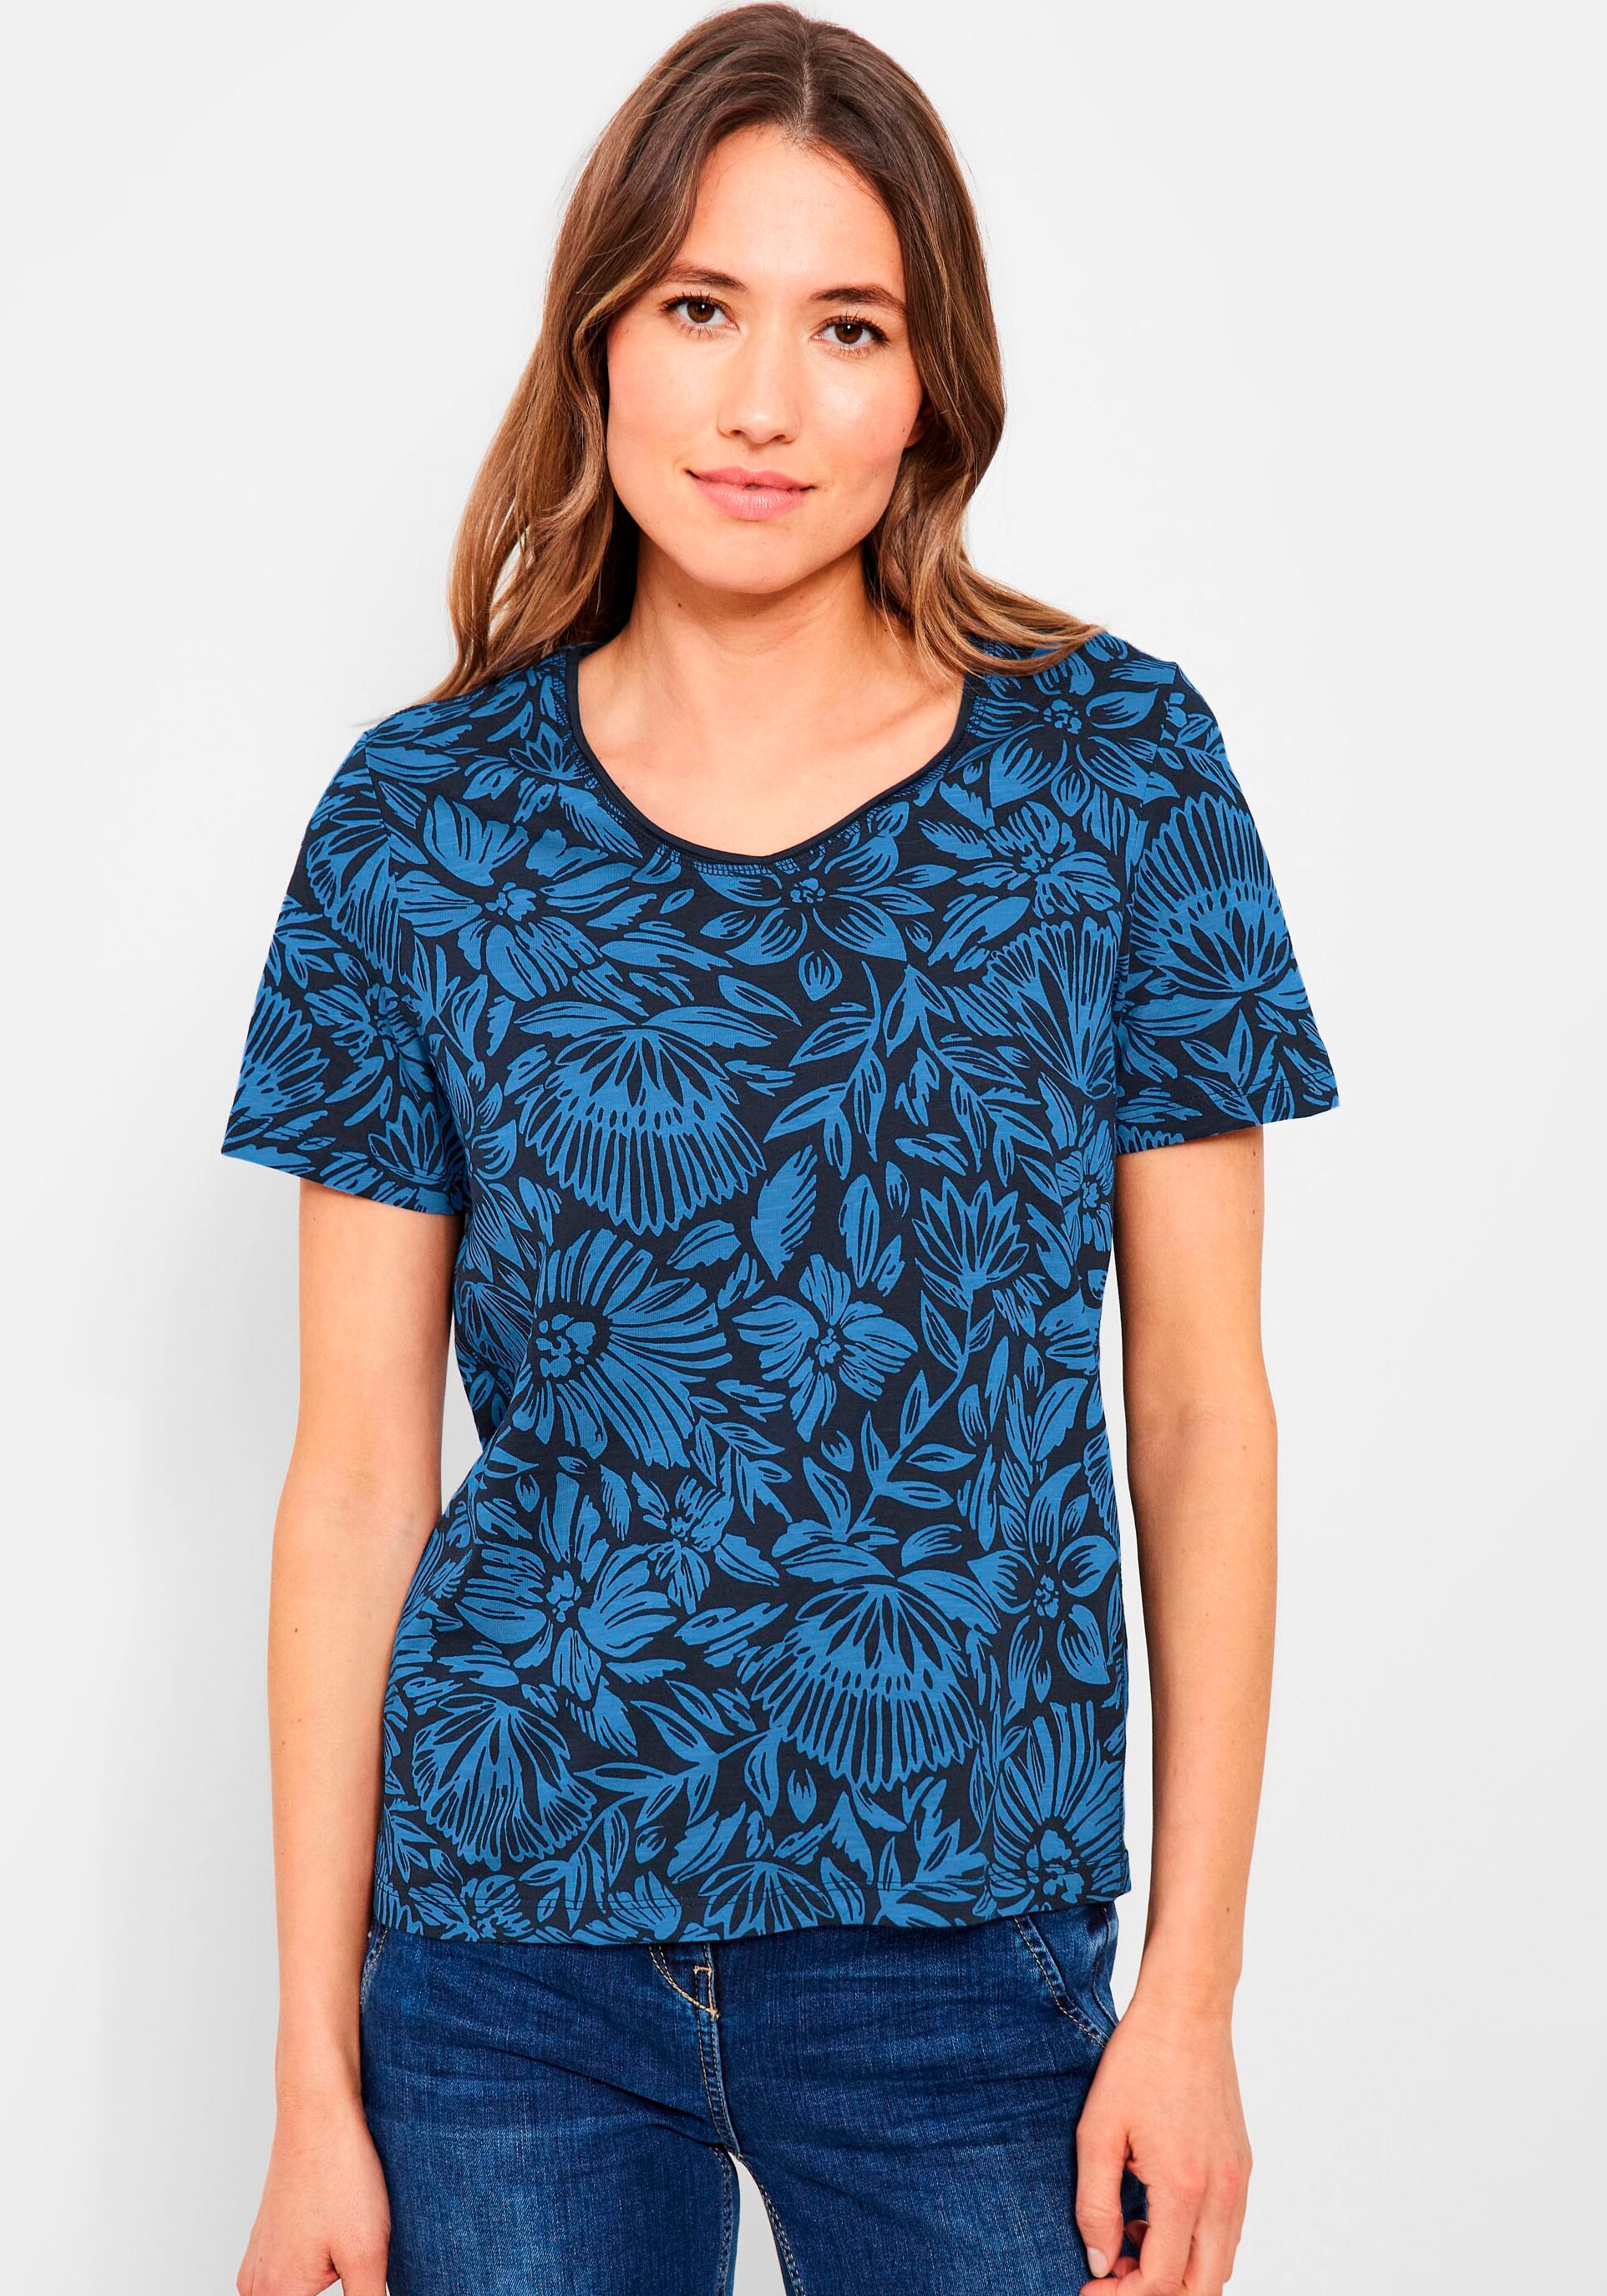 Alloverdruck bei Cecil OTTOversand T-Shirt, mit sommerlichem